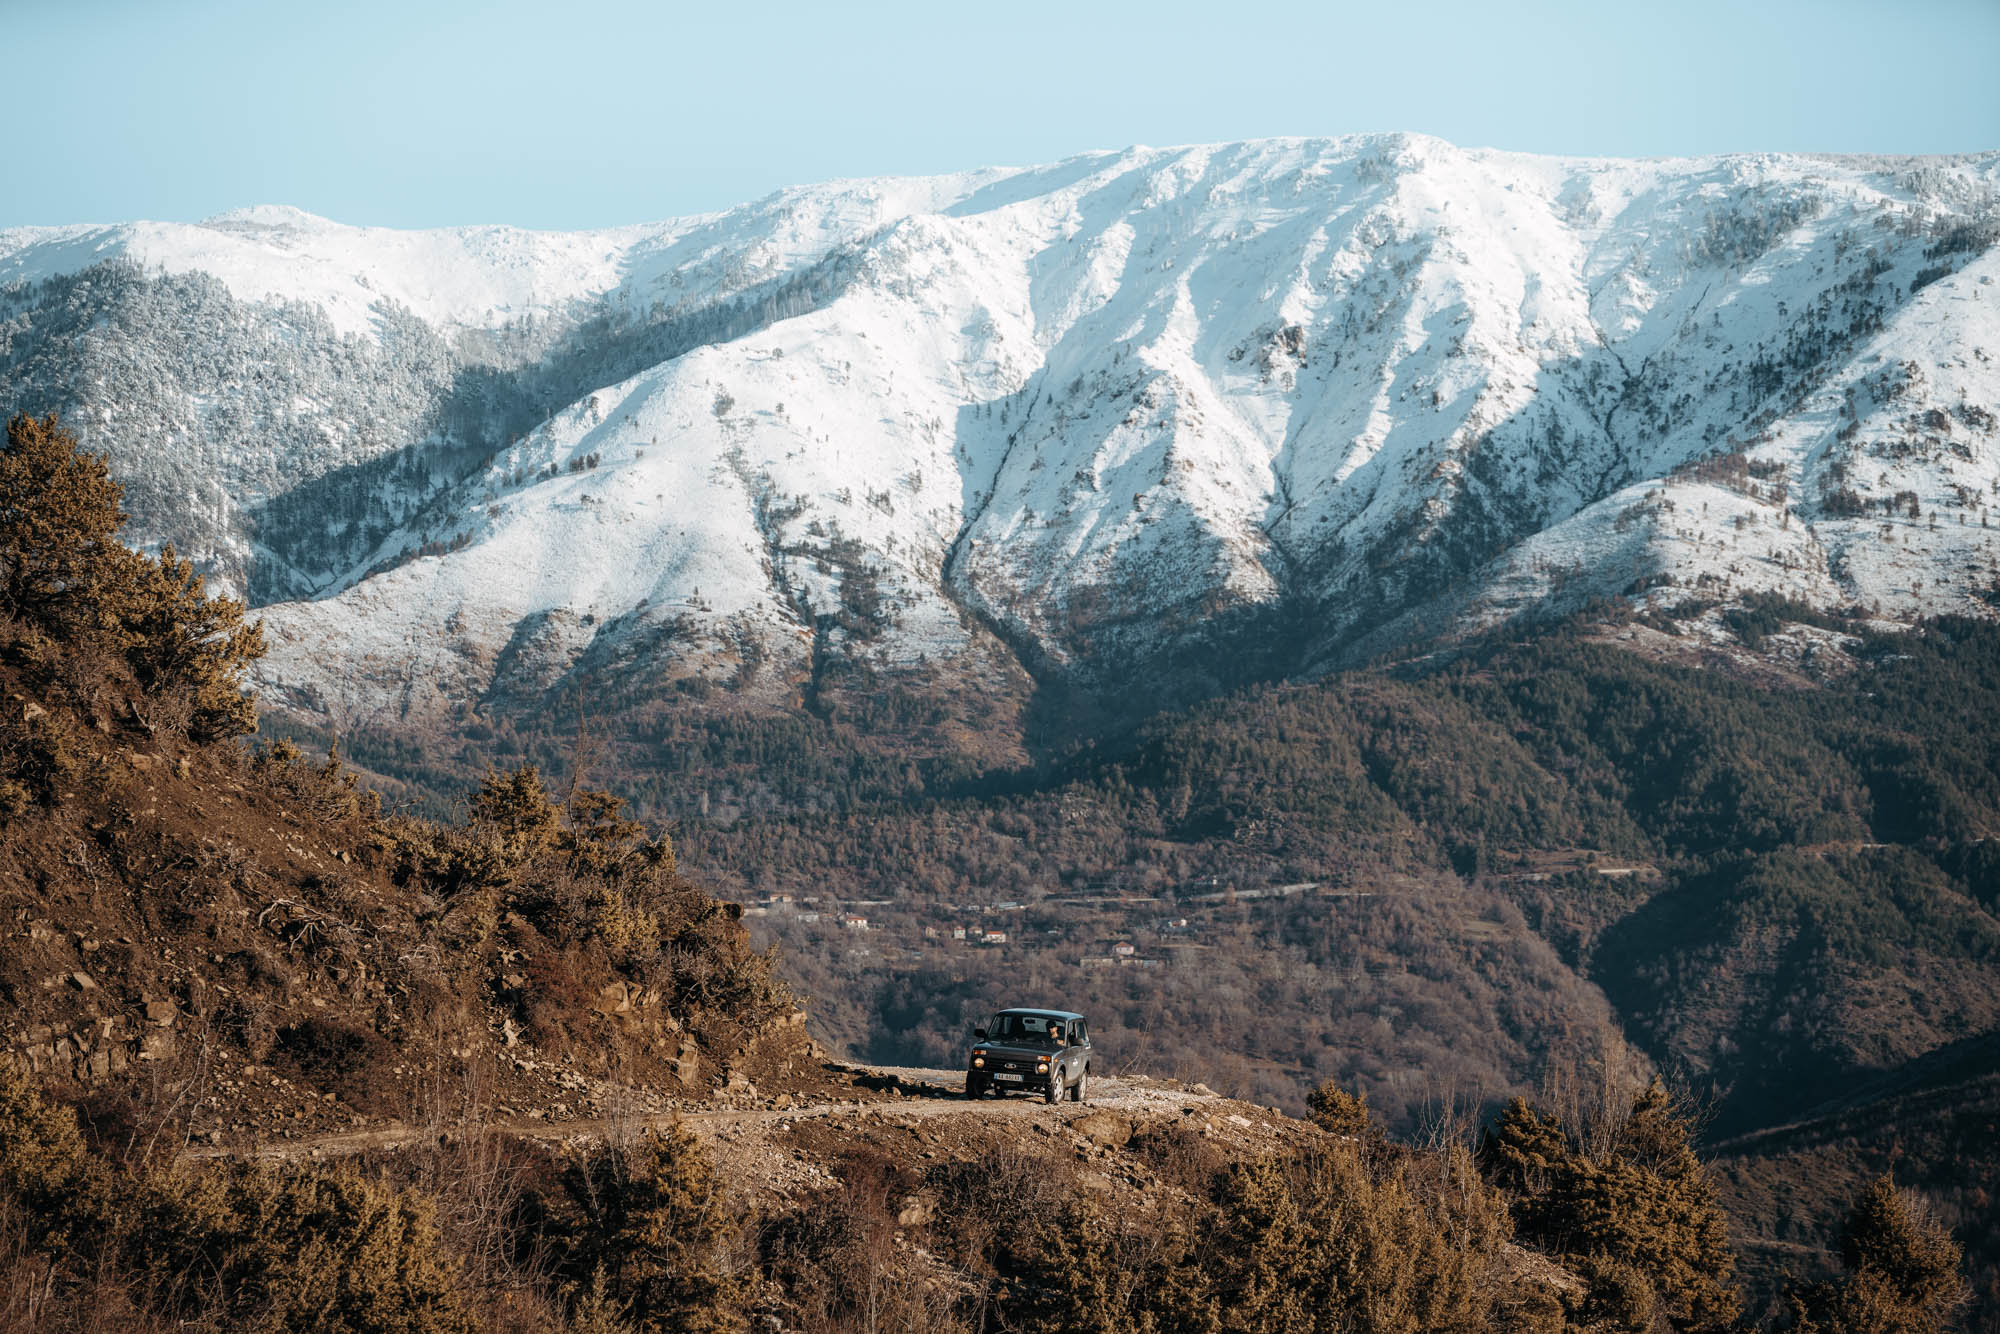 Winter in Albanien - Teil 1 © Johannes Hulsch